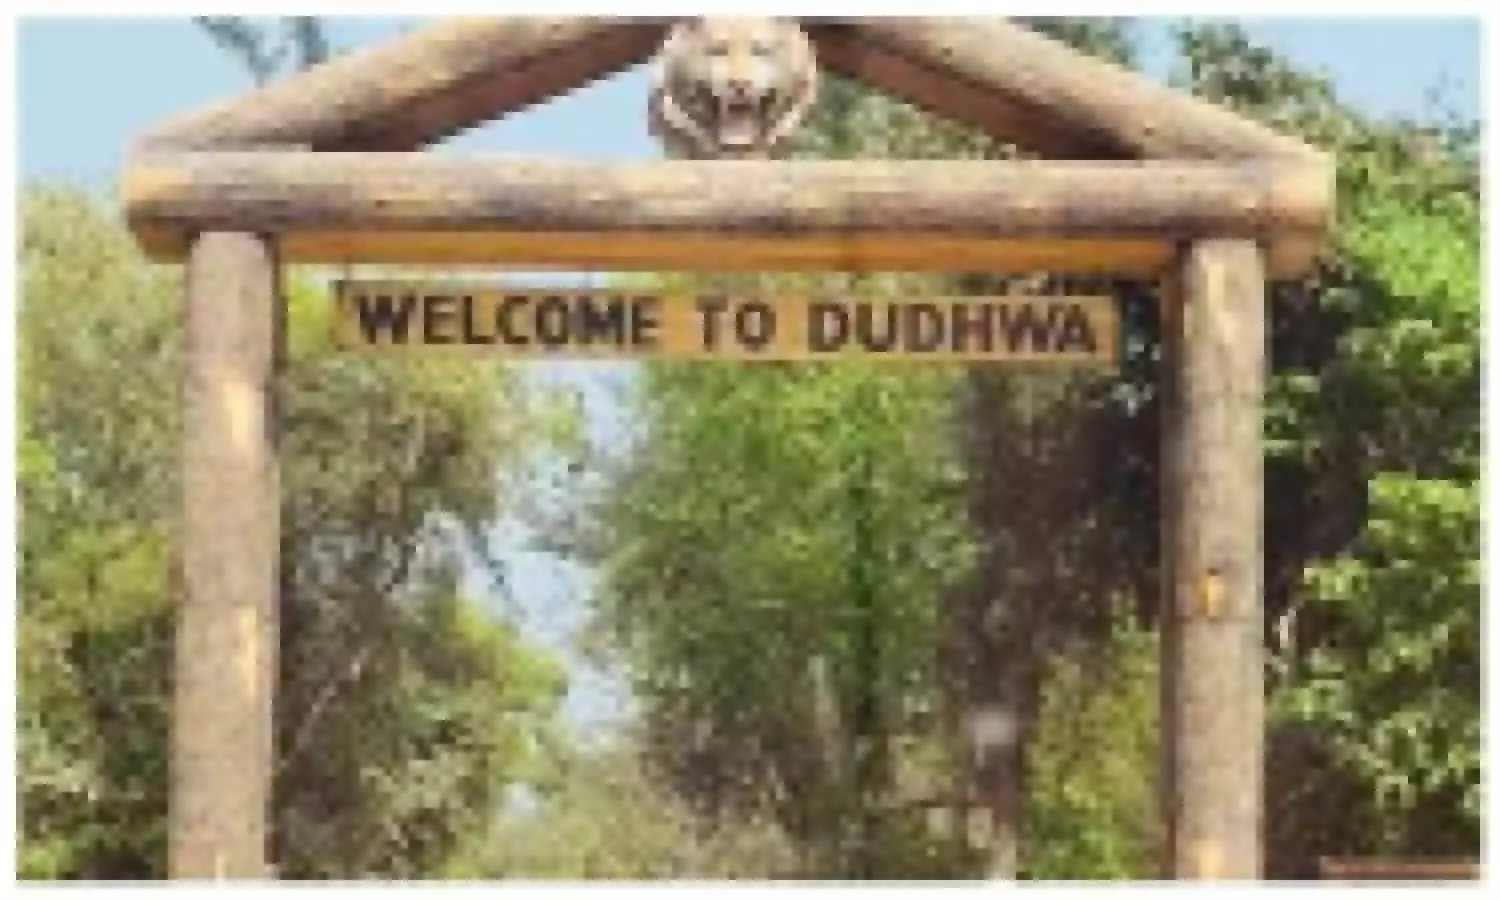 Dudhwa National Park in Lakhimpur Kheri